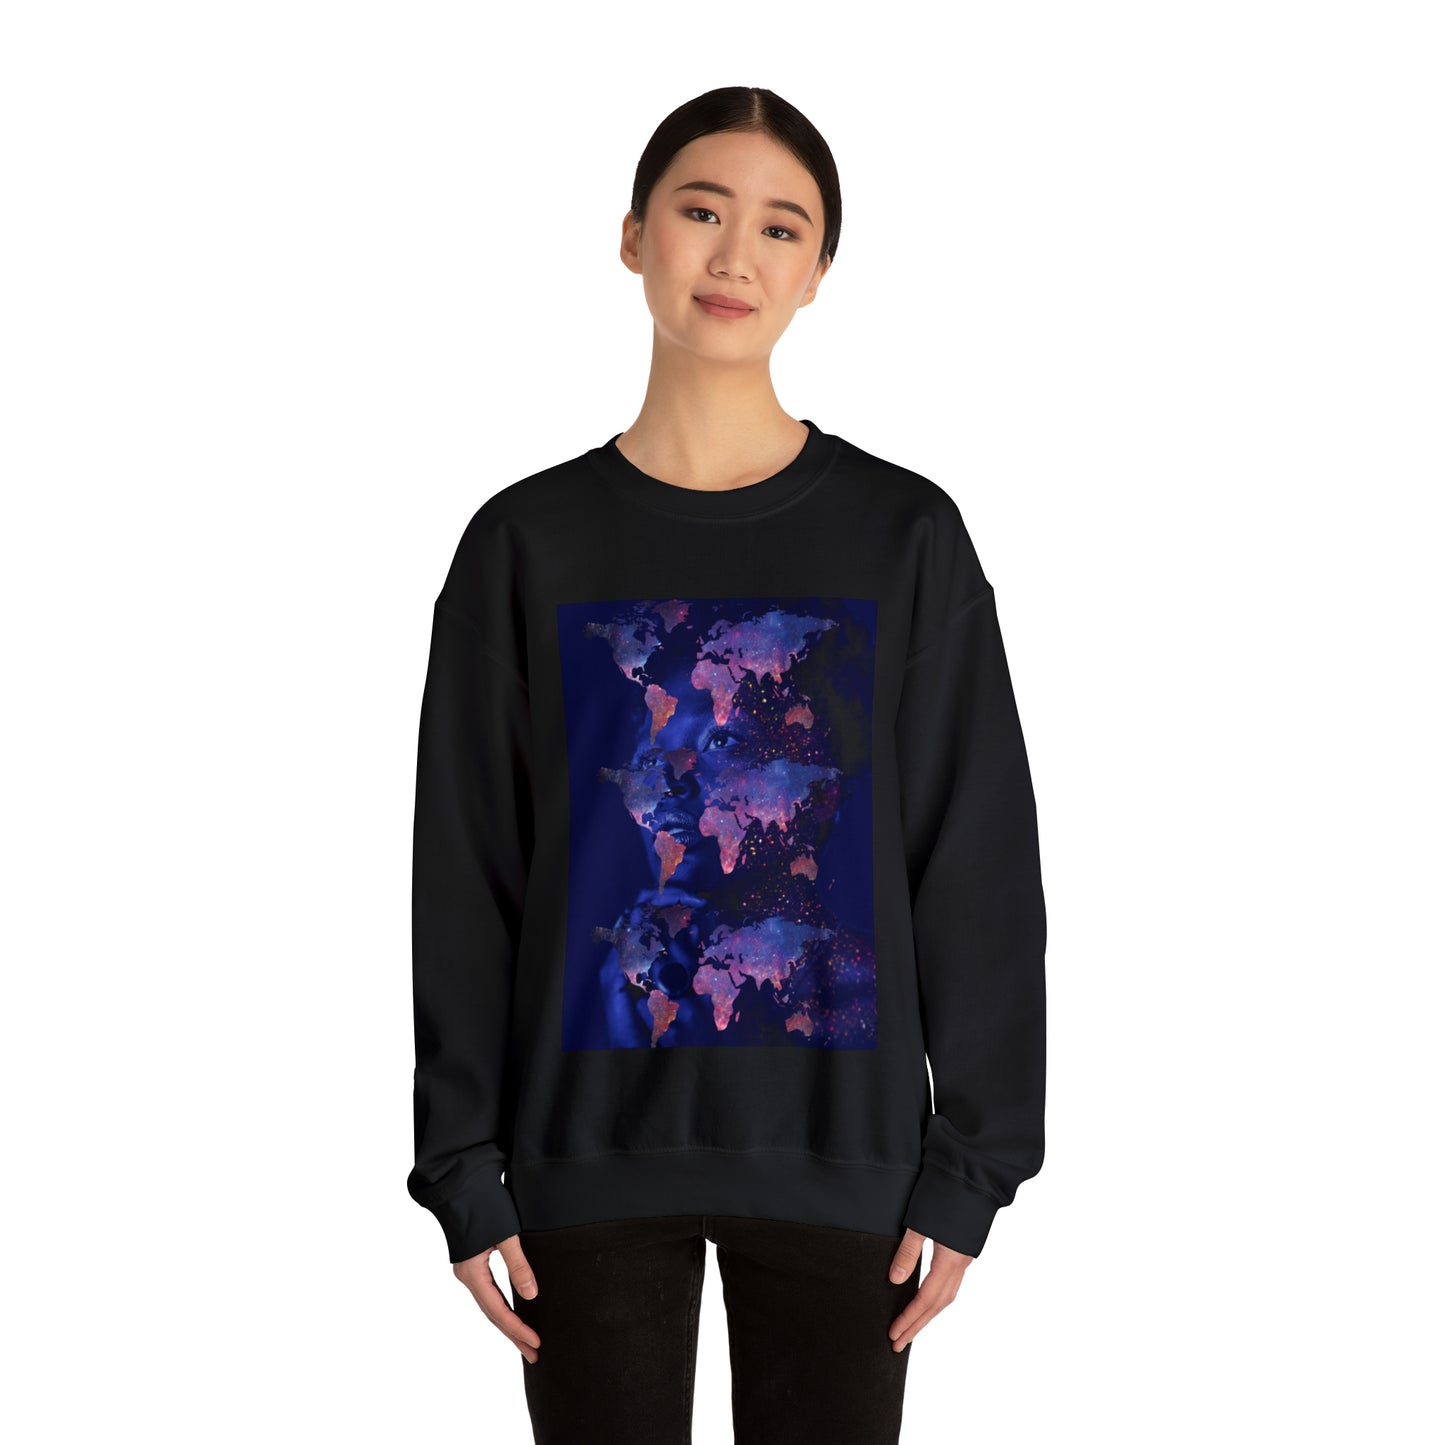 Graphic Sweatshirt, Worldly Woman Crewneck Sweatshirt, Streetwear Aesthetic